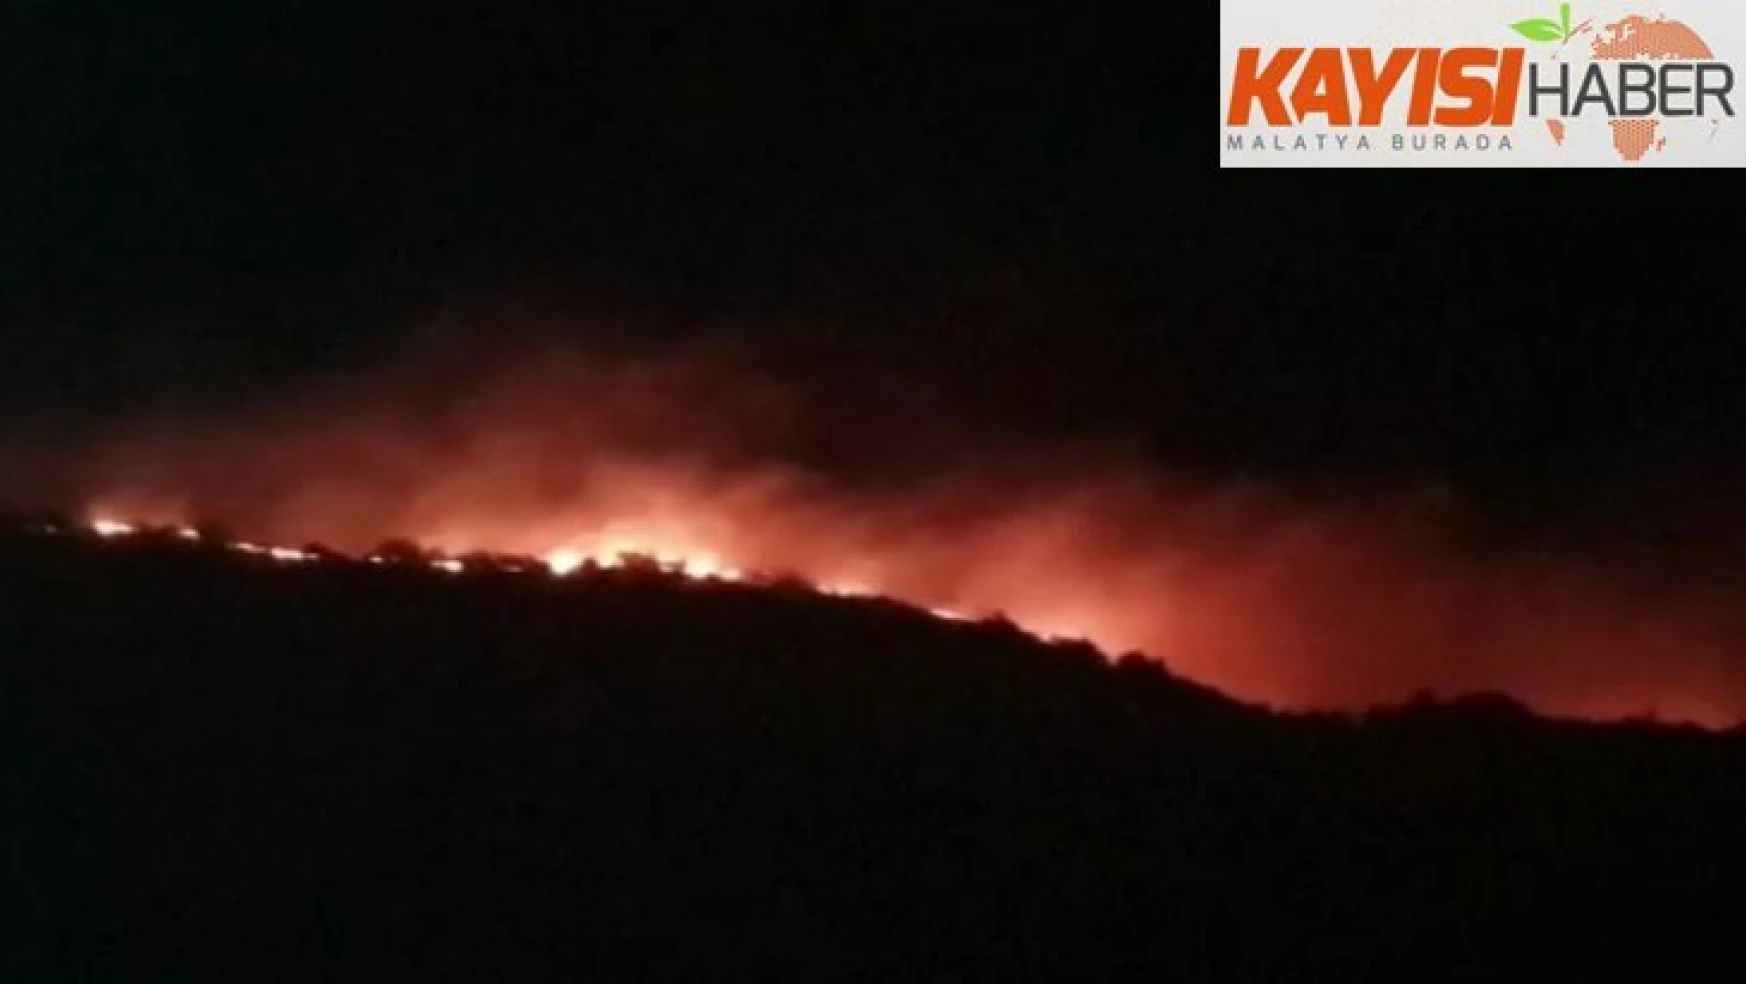 Elazığ'da orman yangını